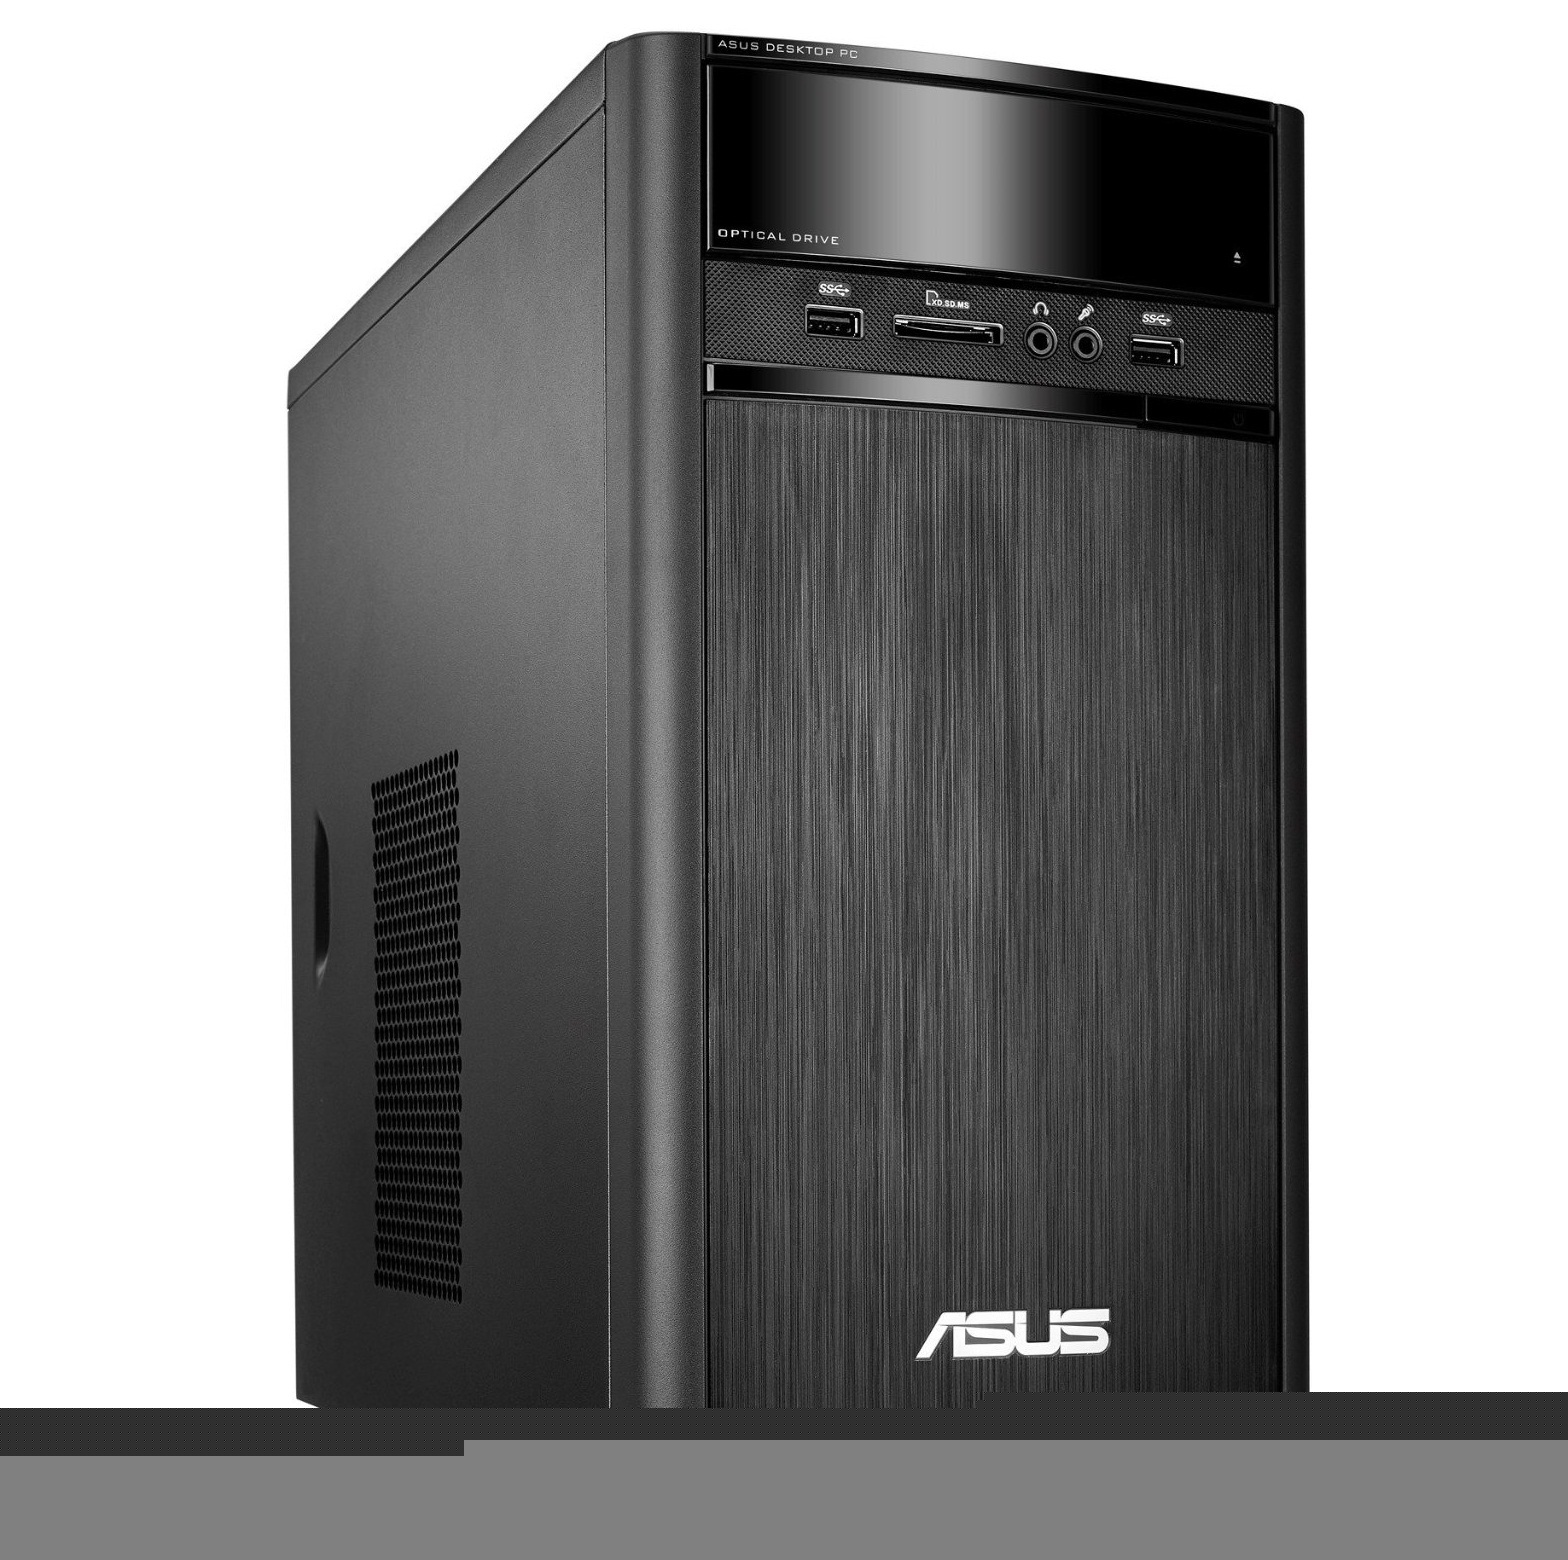 Máy tính để bàn Asus K31AD-VN012D - Intel Core i3 4160, 2GG RAM, 1TB HDD, VGA Intel HD Graphics